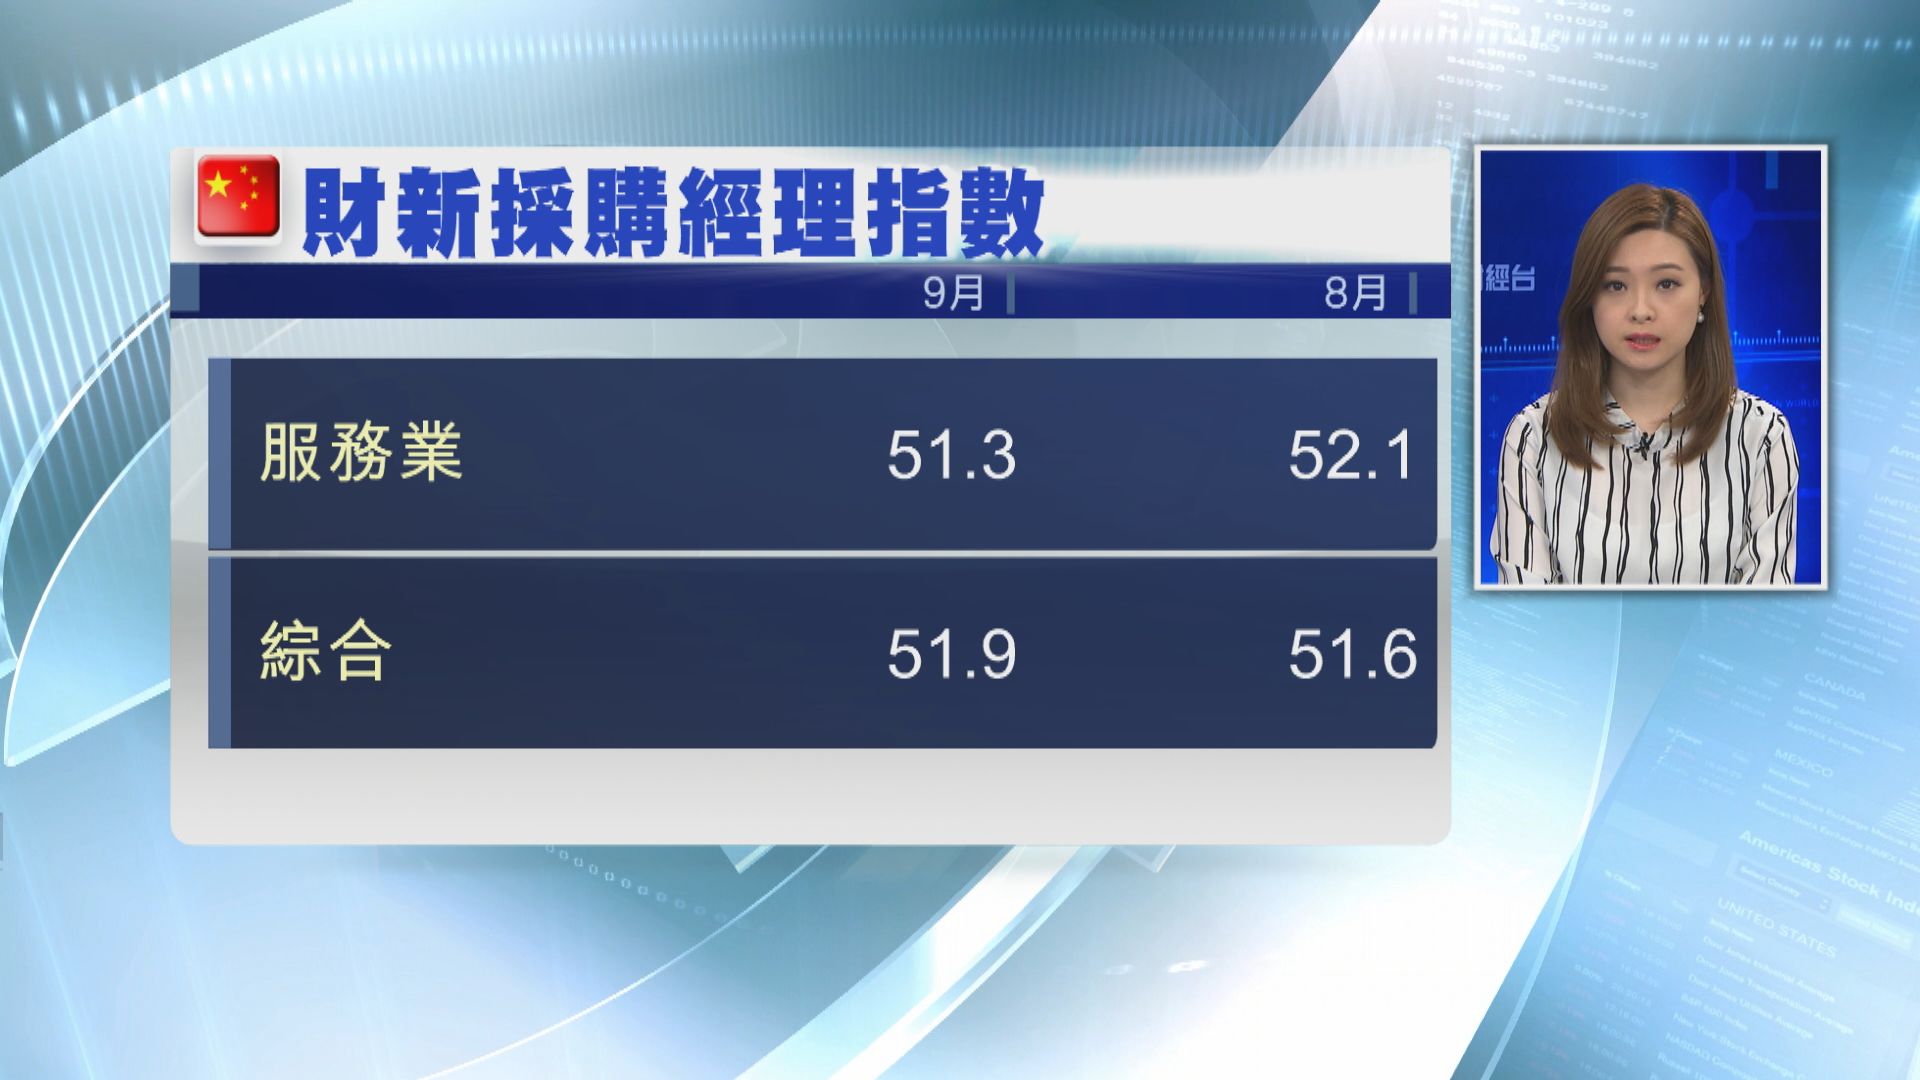 【7個月低位】9月財新中國服務業PMI報51.3 遜預期